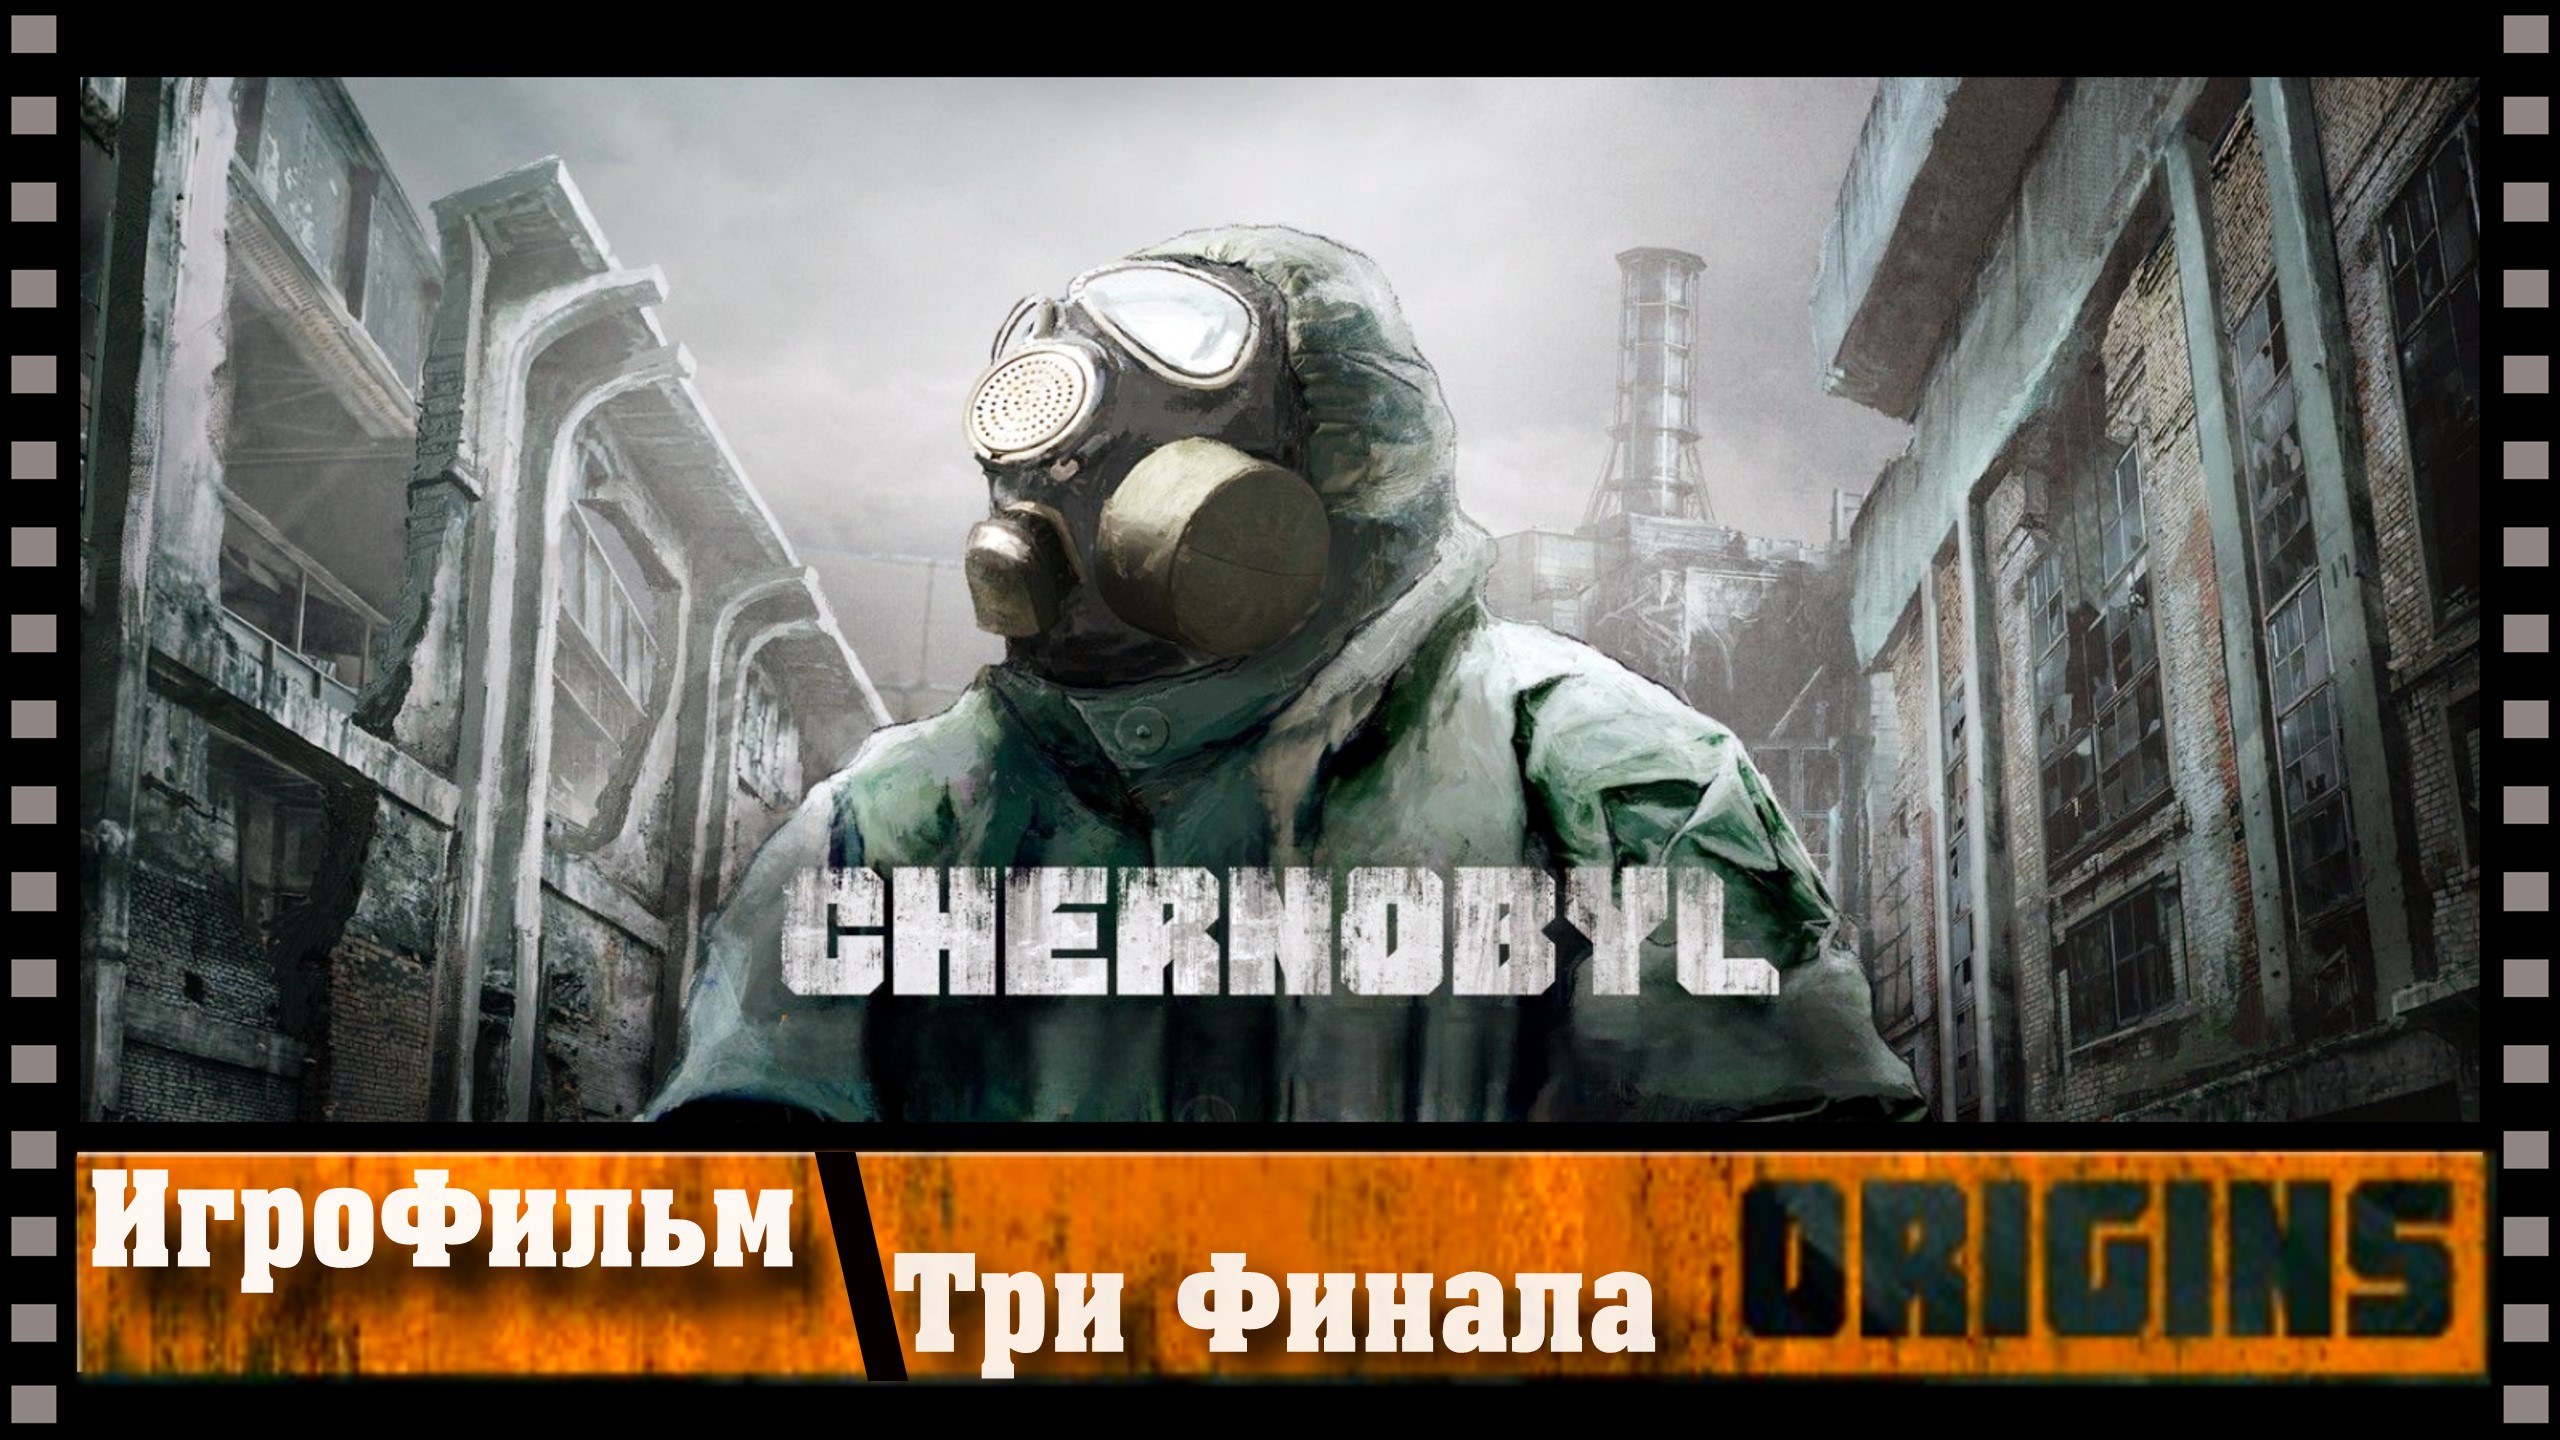 Чернобыль другой финал